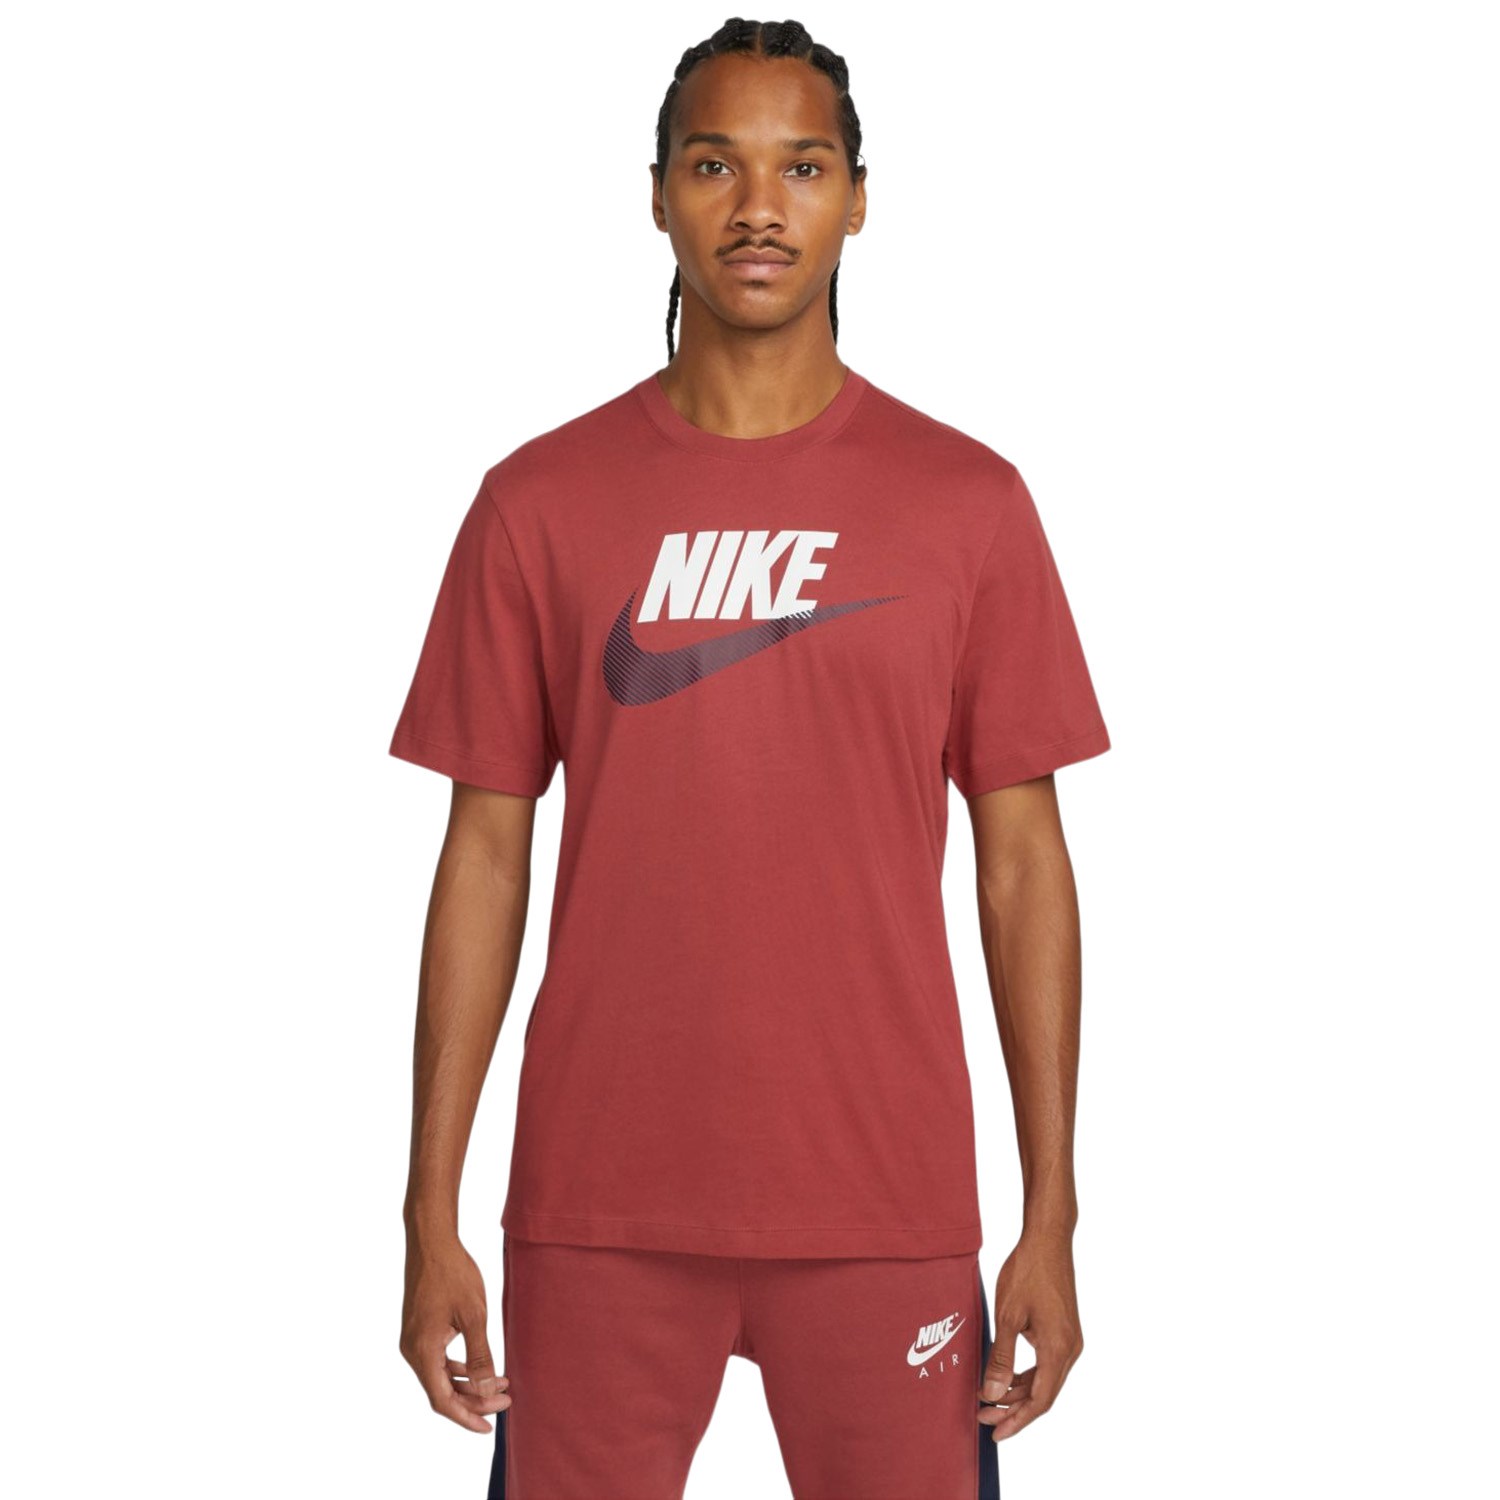 Nike Sportswear Mens T-Shirt - Cedar/Obsidian | Sportitude